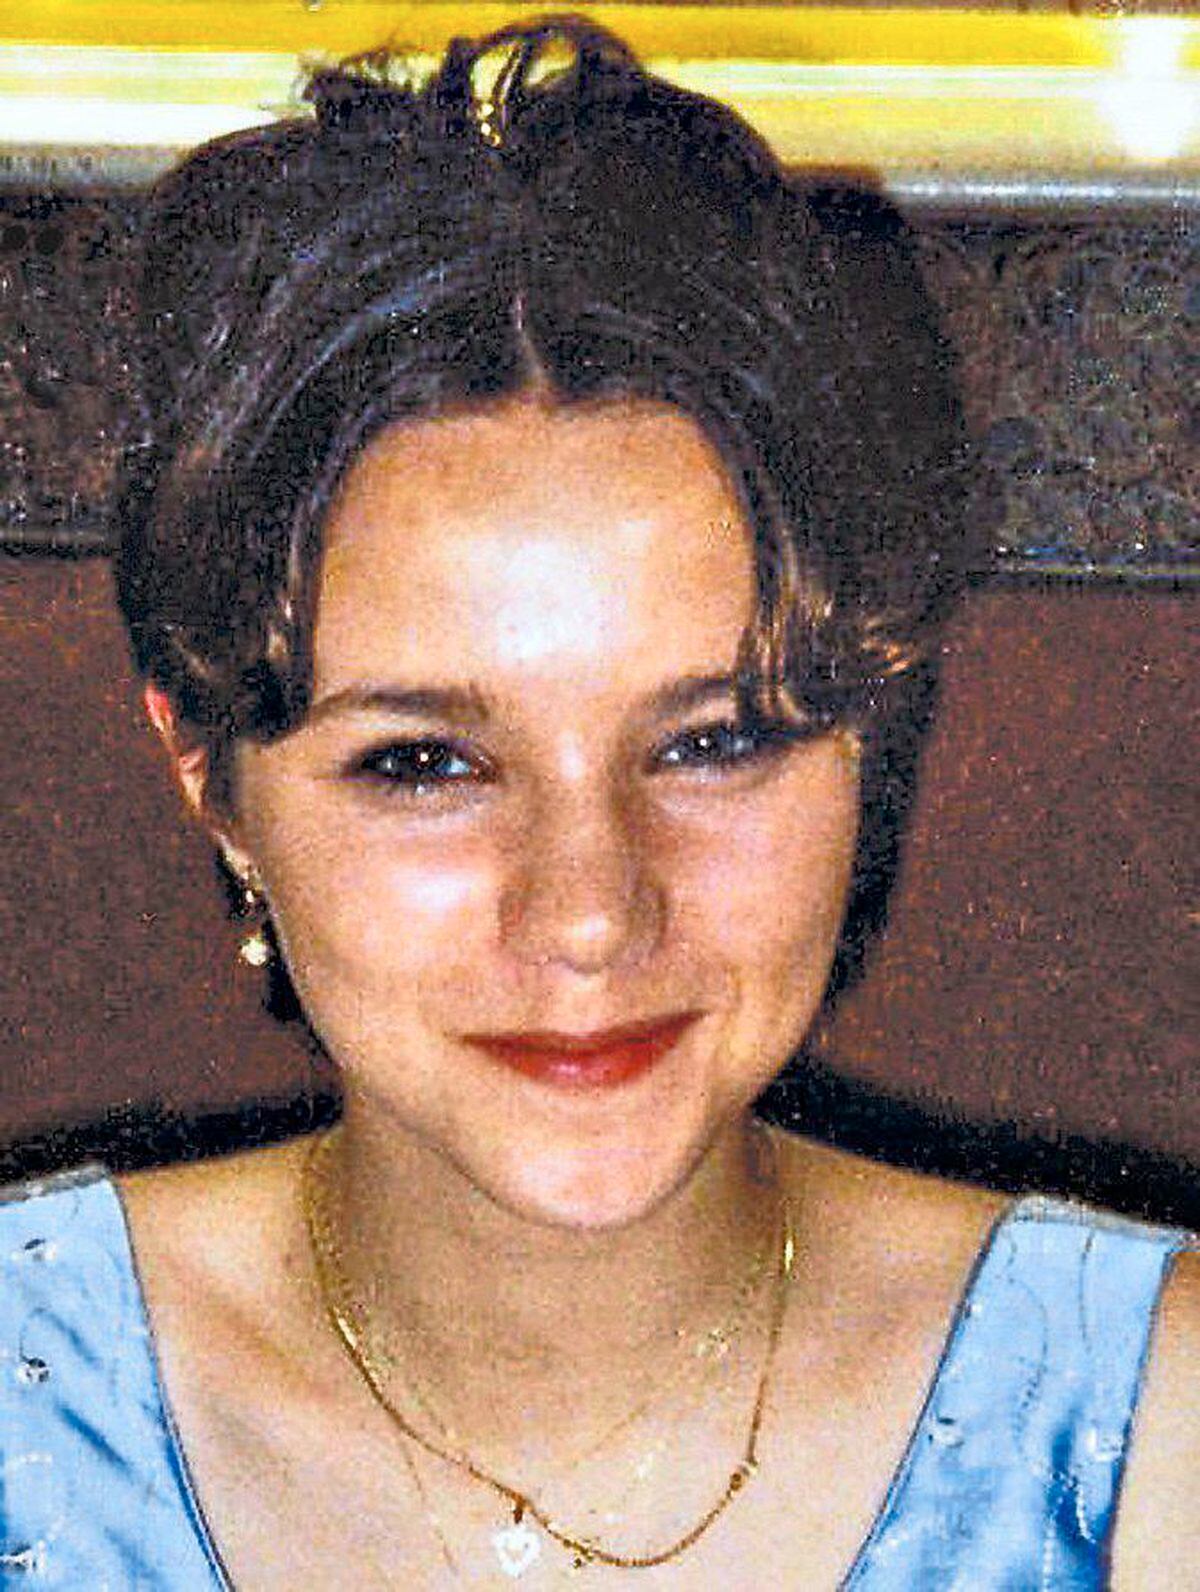 Natalie vanished in September 2003